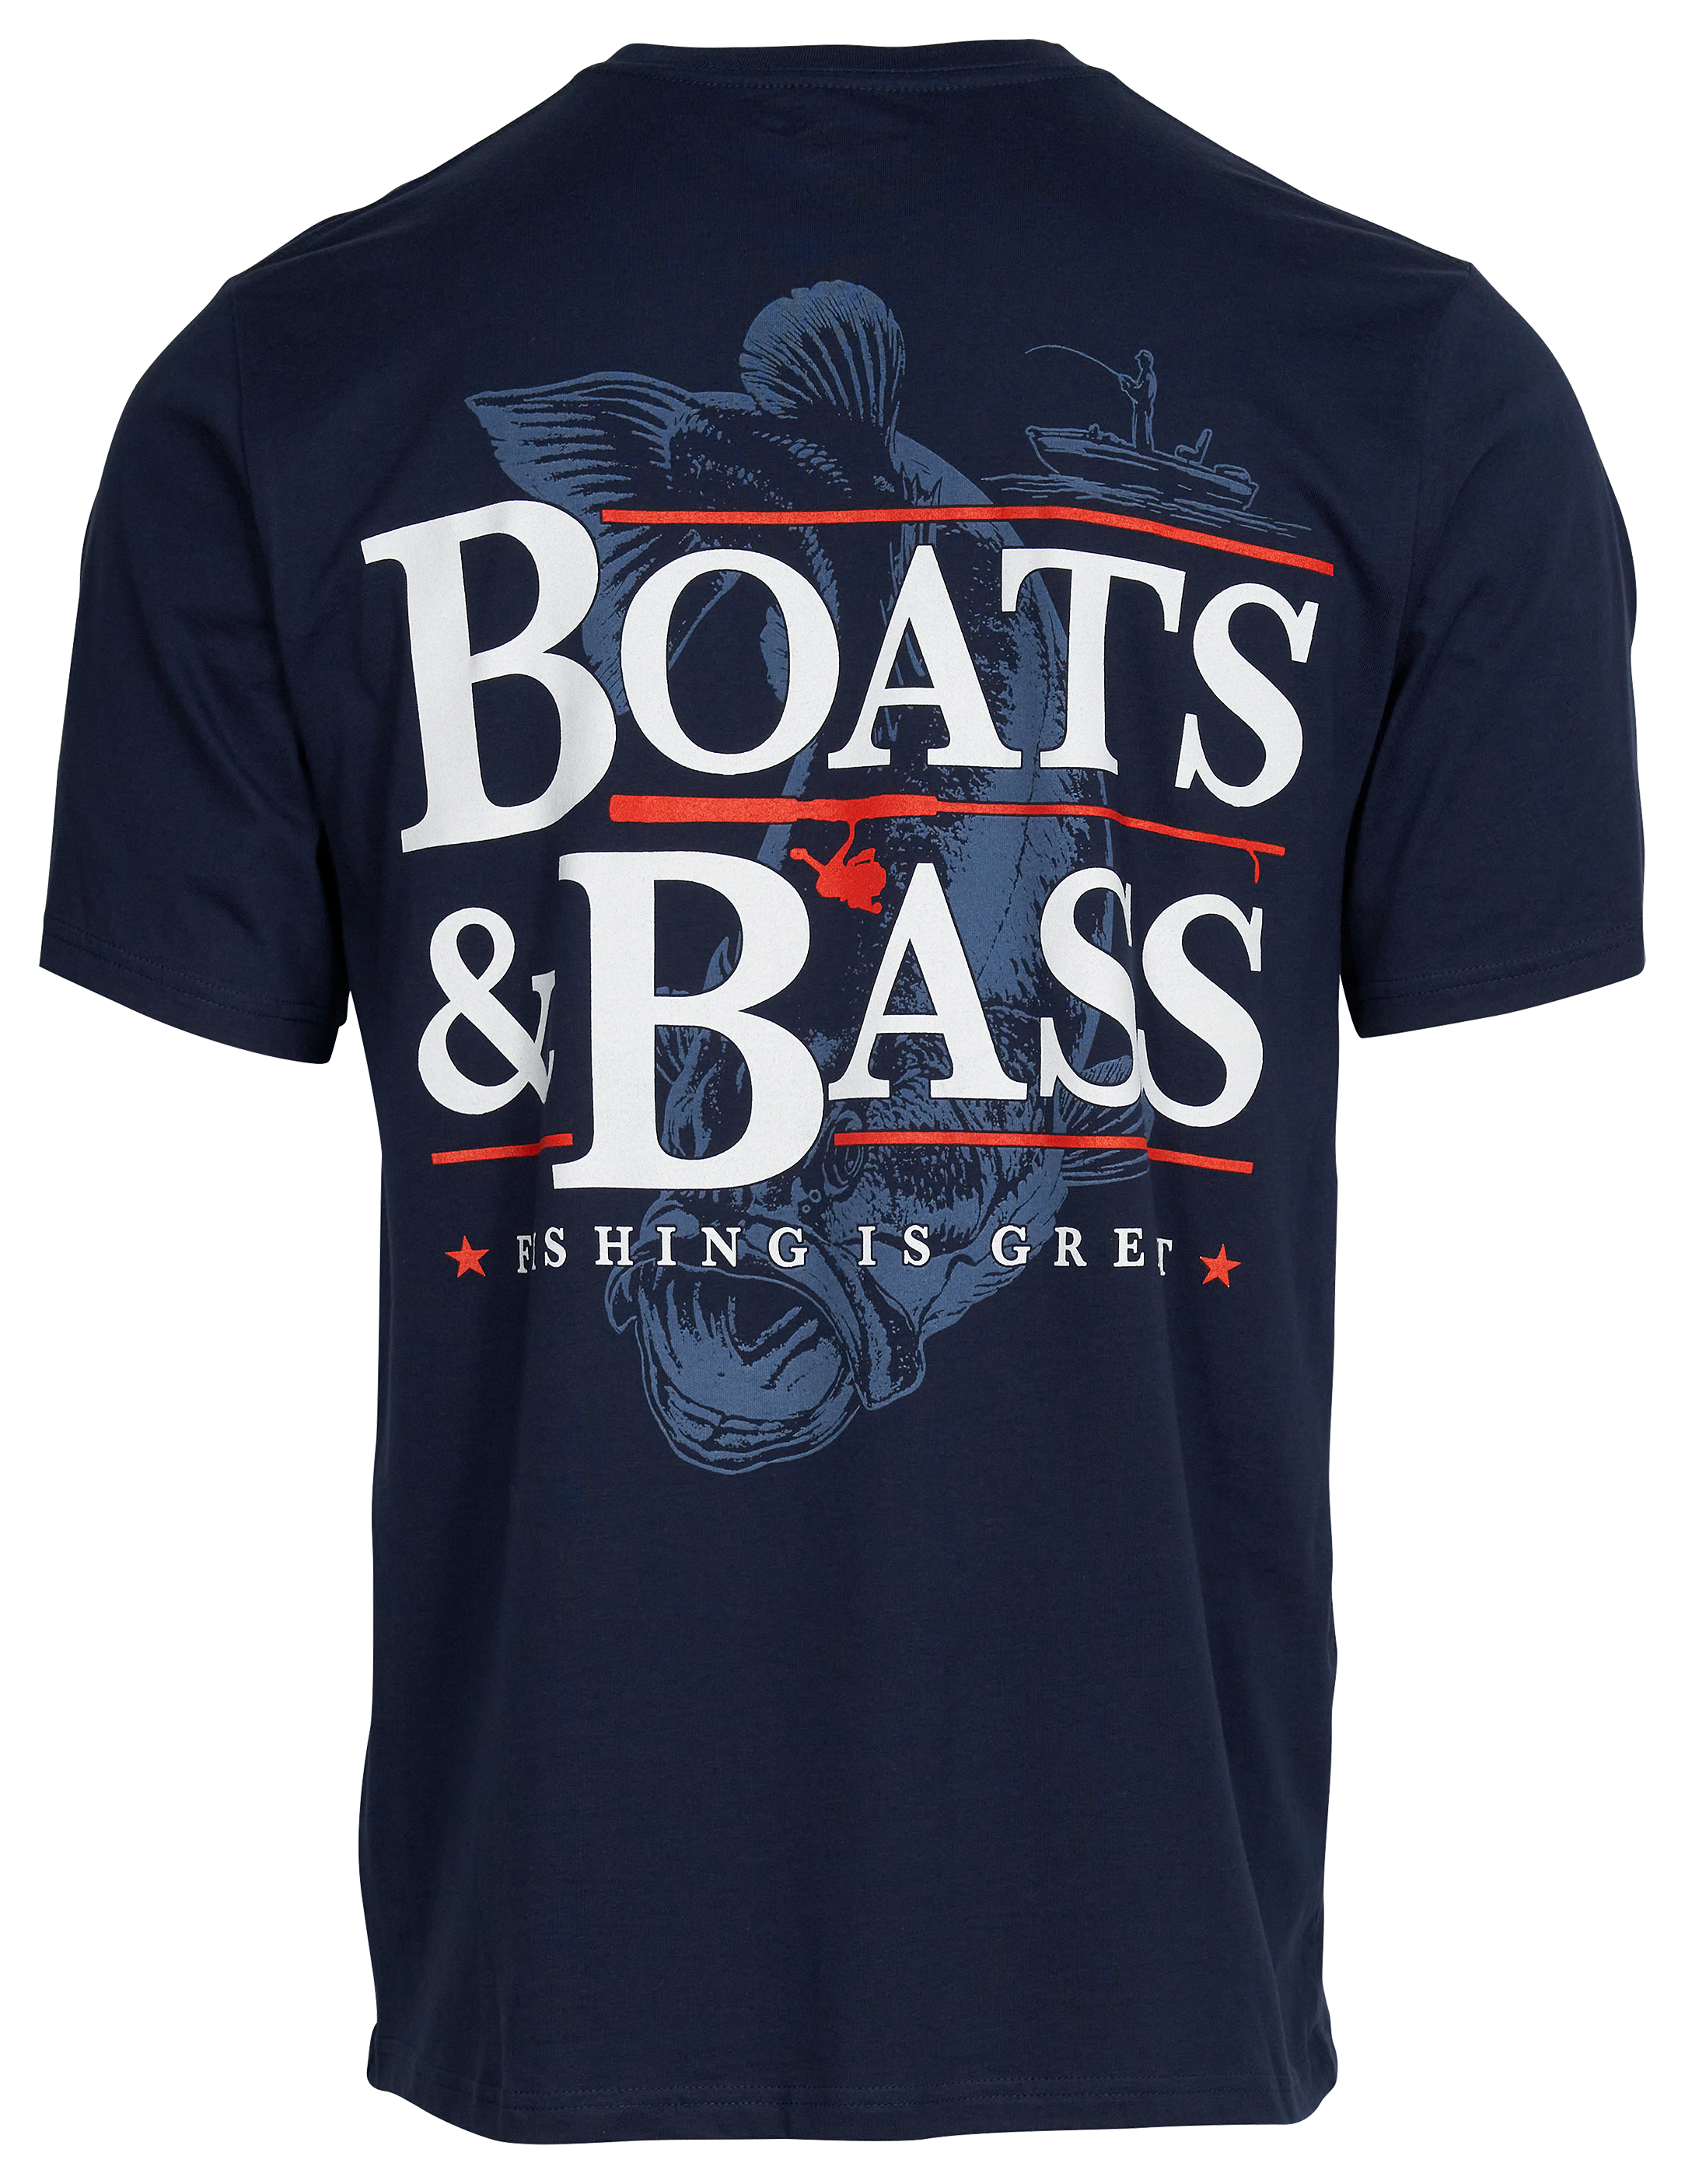 Big Bass Fishing Printed T-Shirt Tall  Print t shirt, Fishing t shirts,  Cotton tee shirts